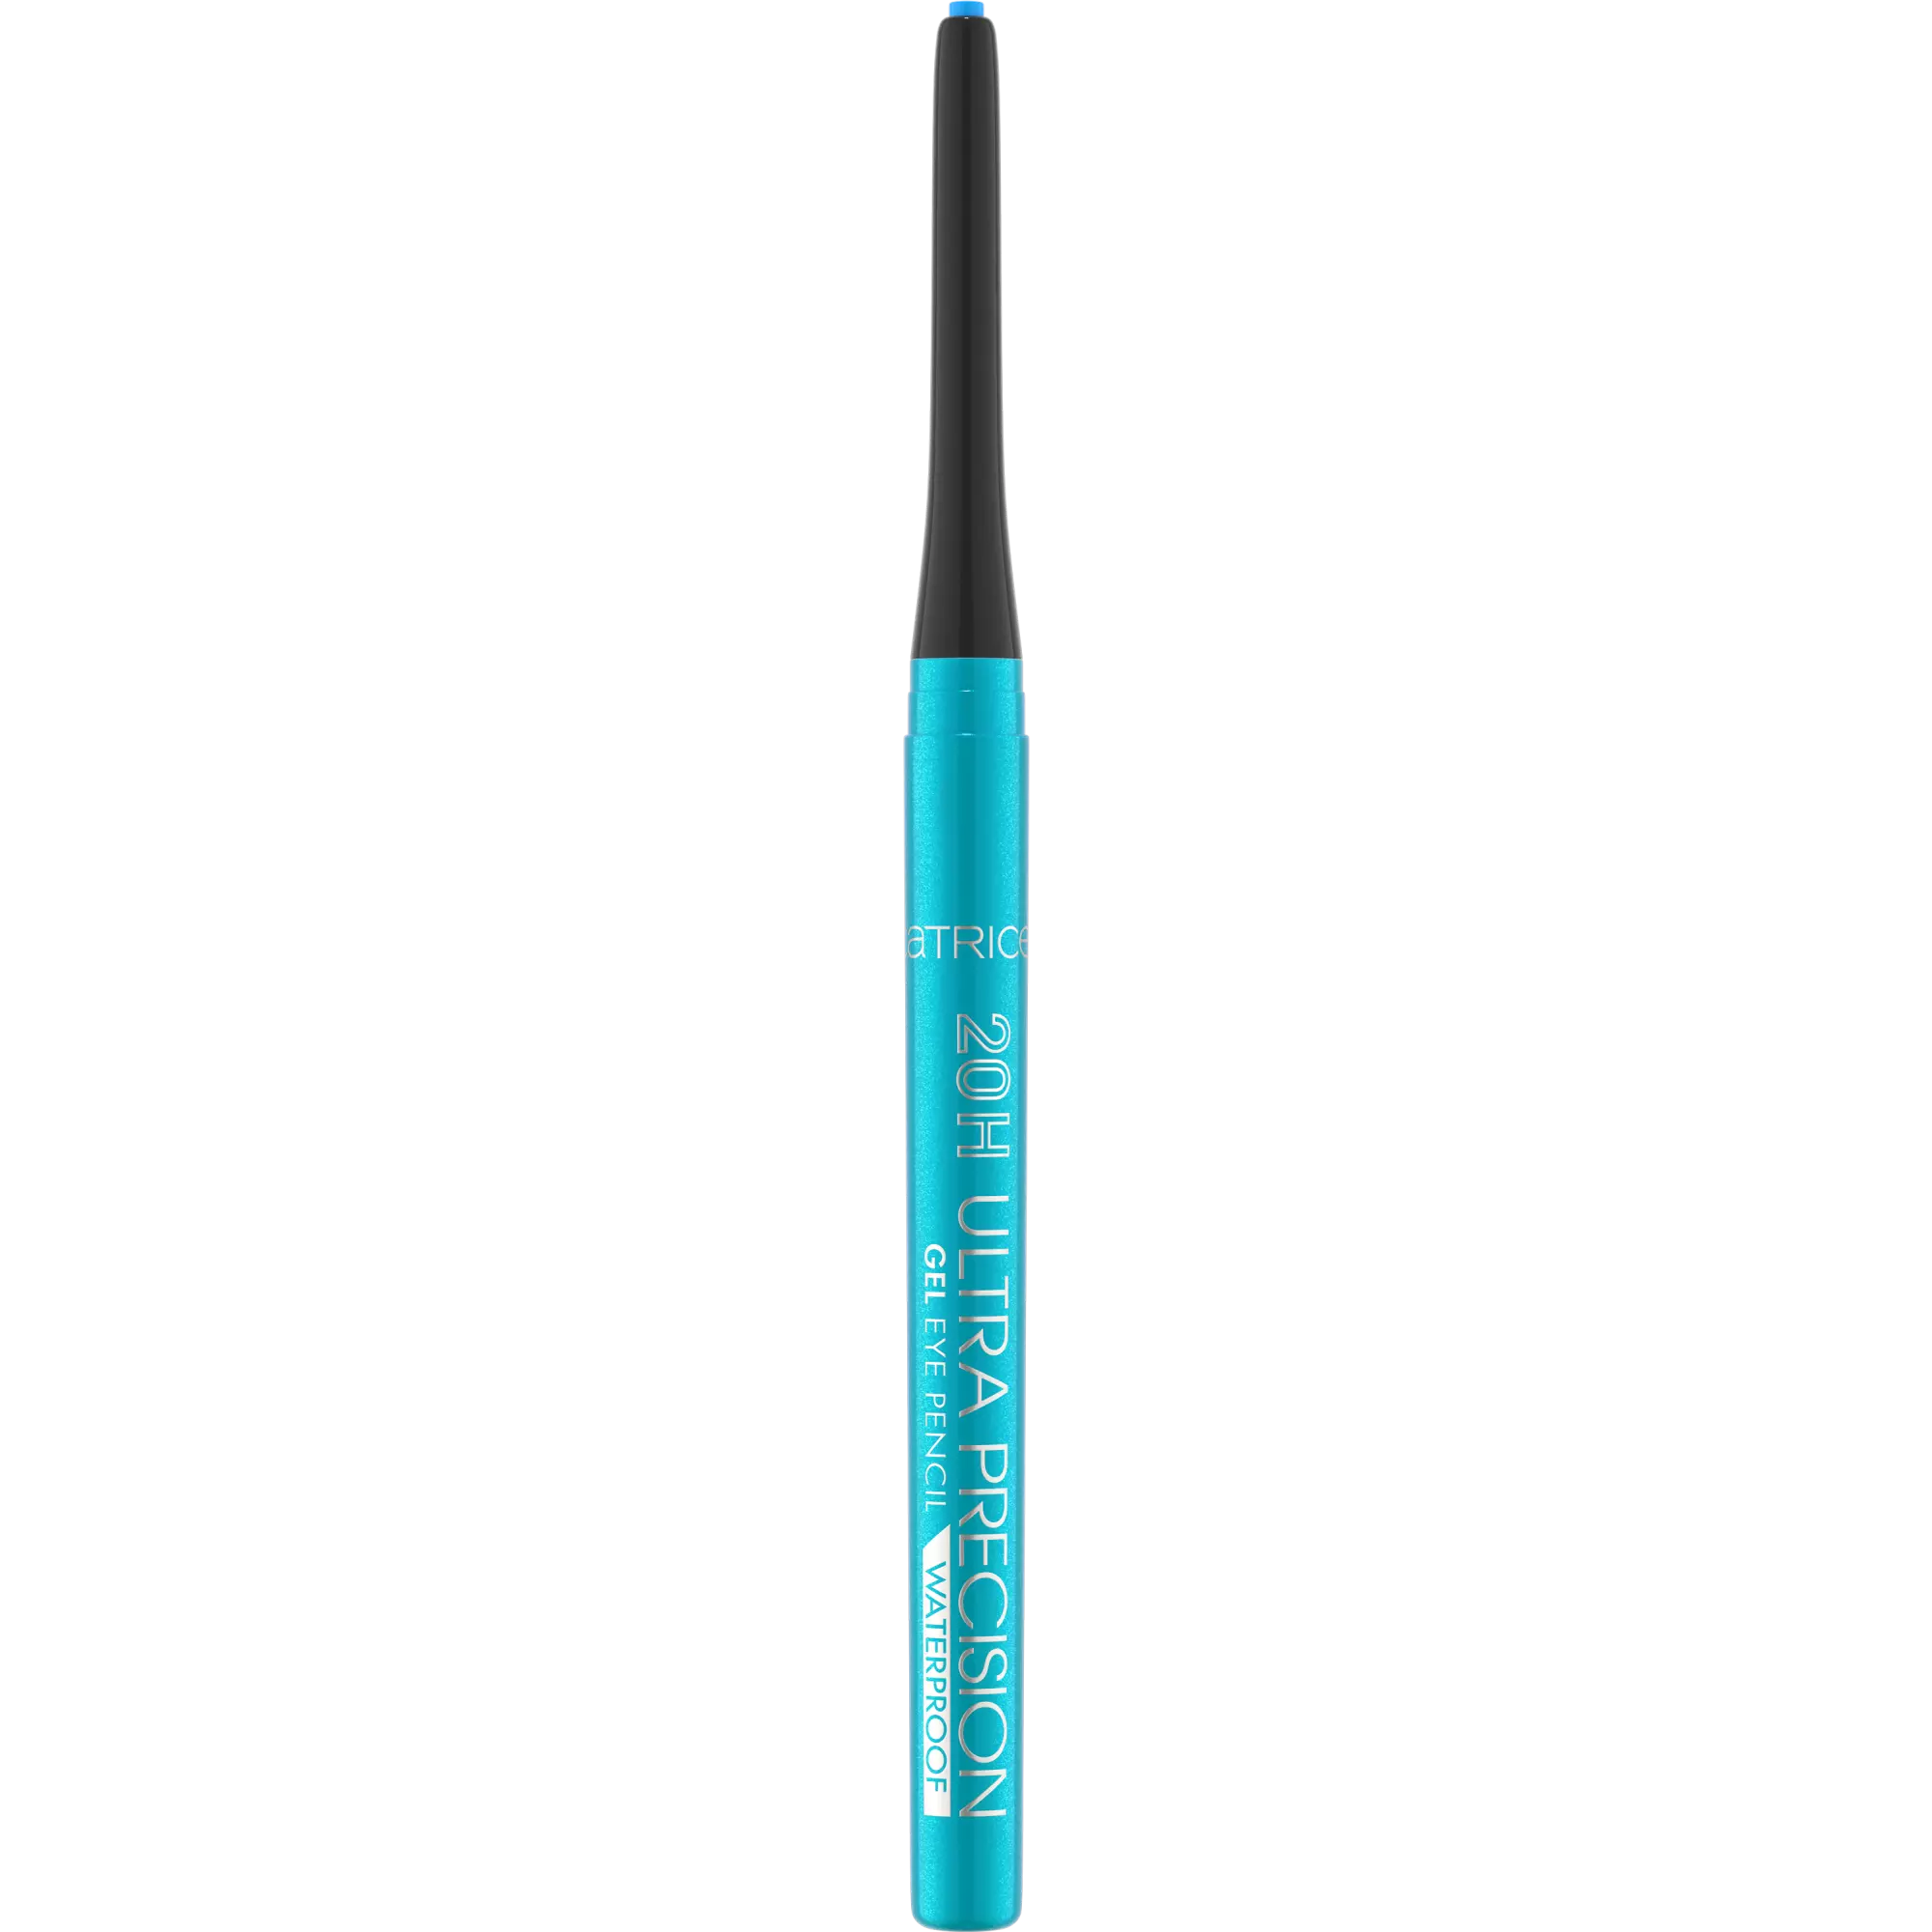 Catrice 20h Ultra Gel Eye 090 Ocean Eyes Blue Eyeliner Pencil